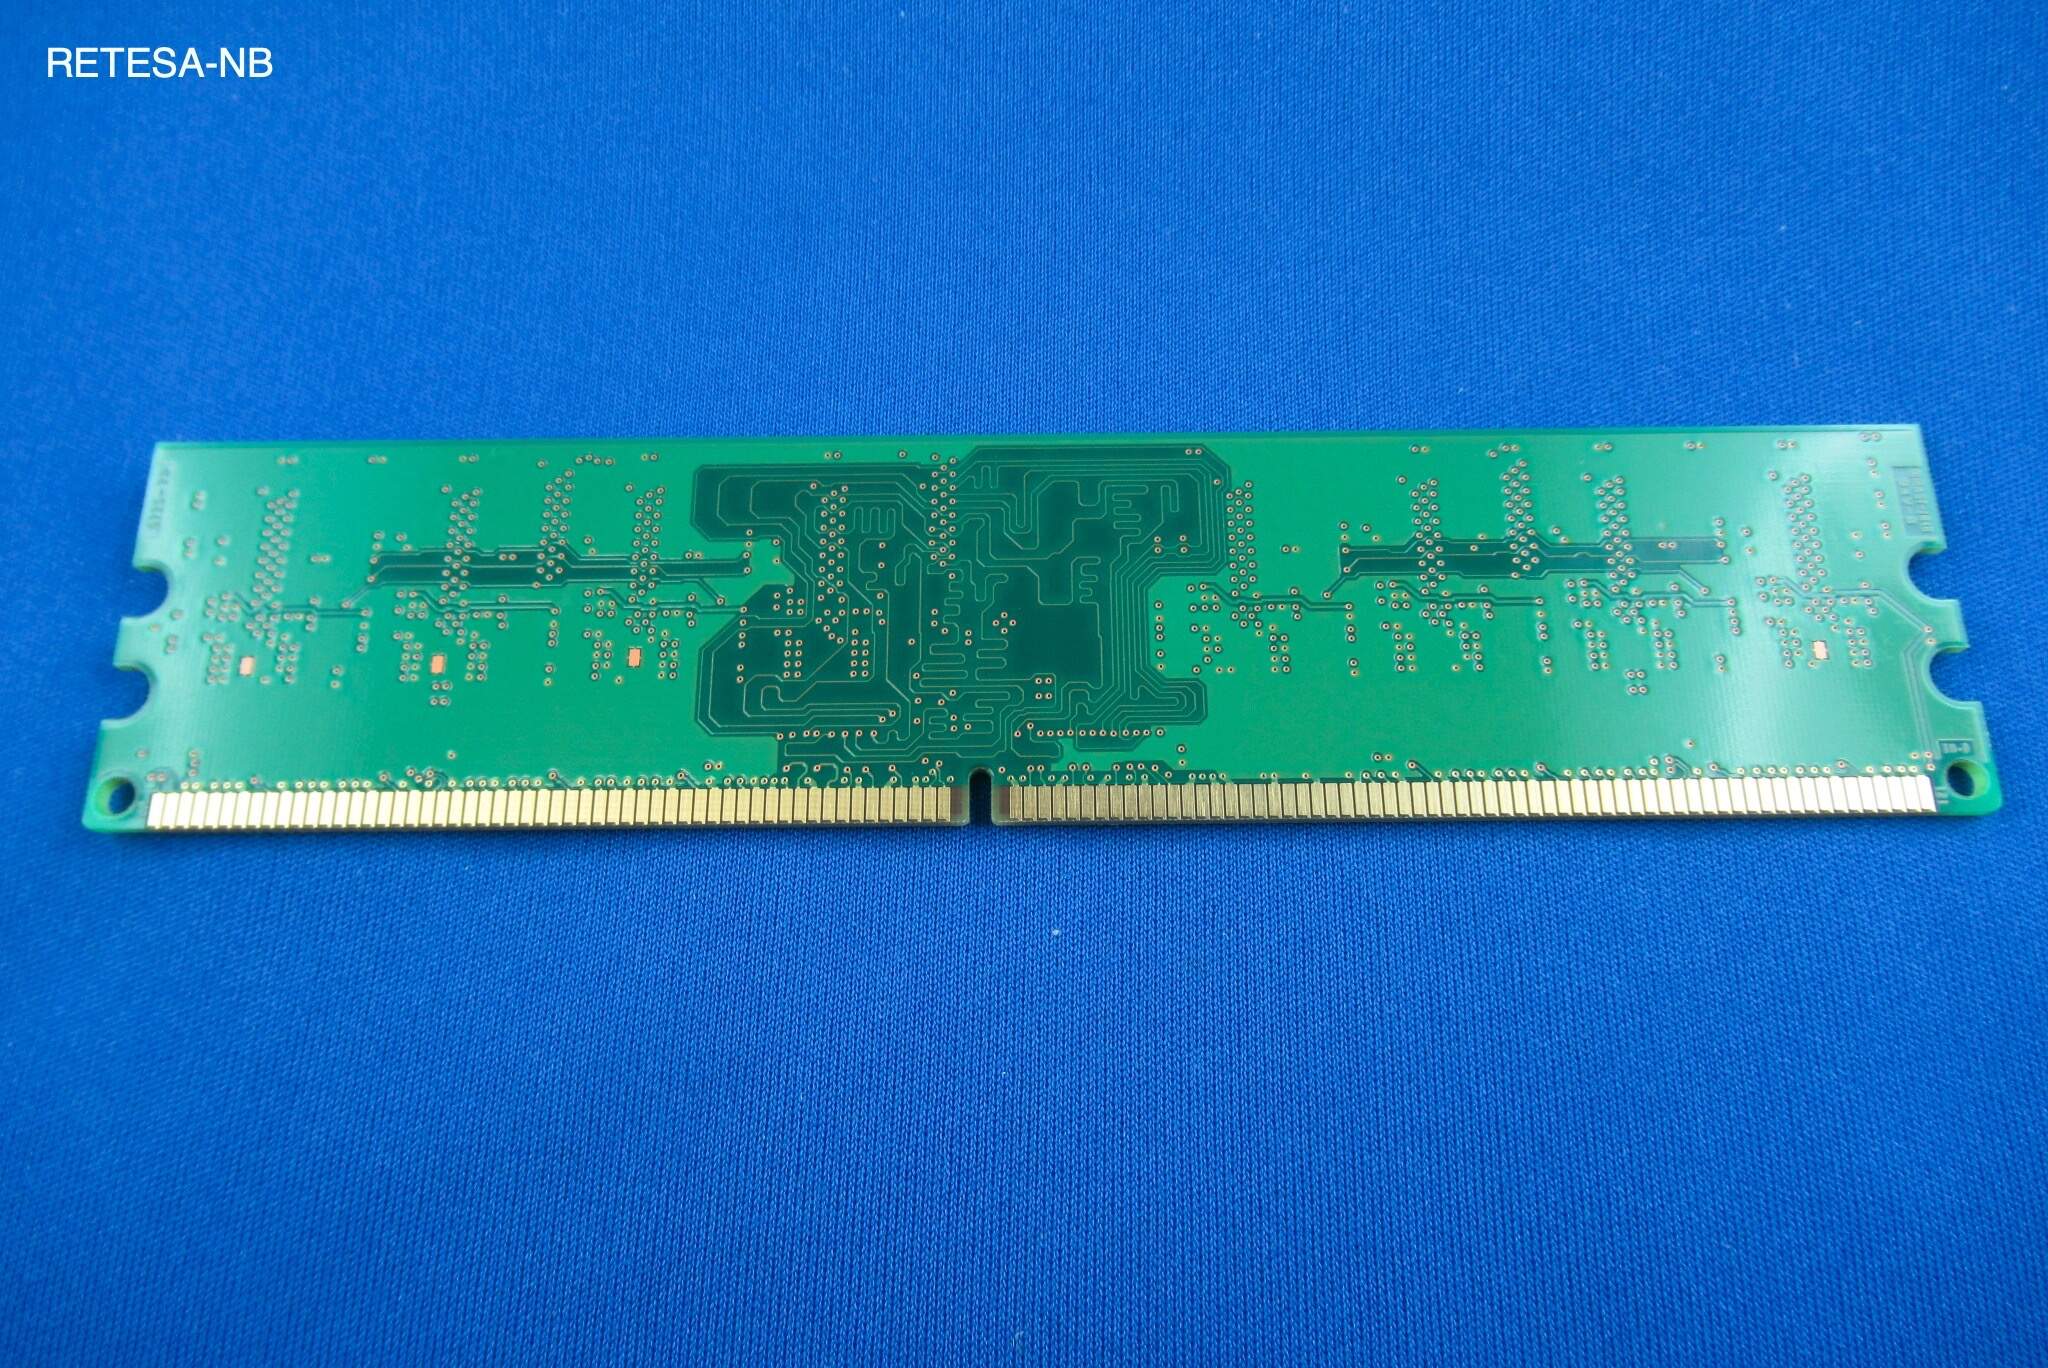 FSC DDR2-RAM 512MB PC667 FSC S26361-F2989-L112